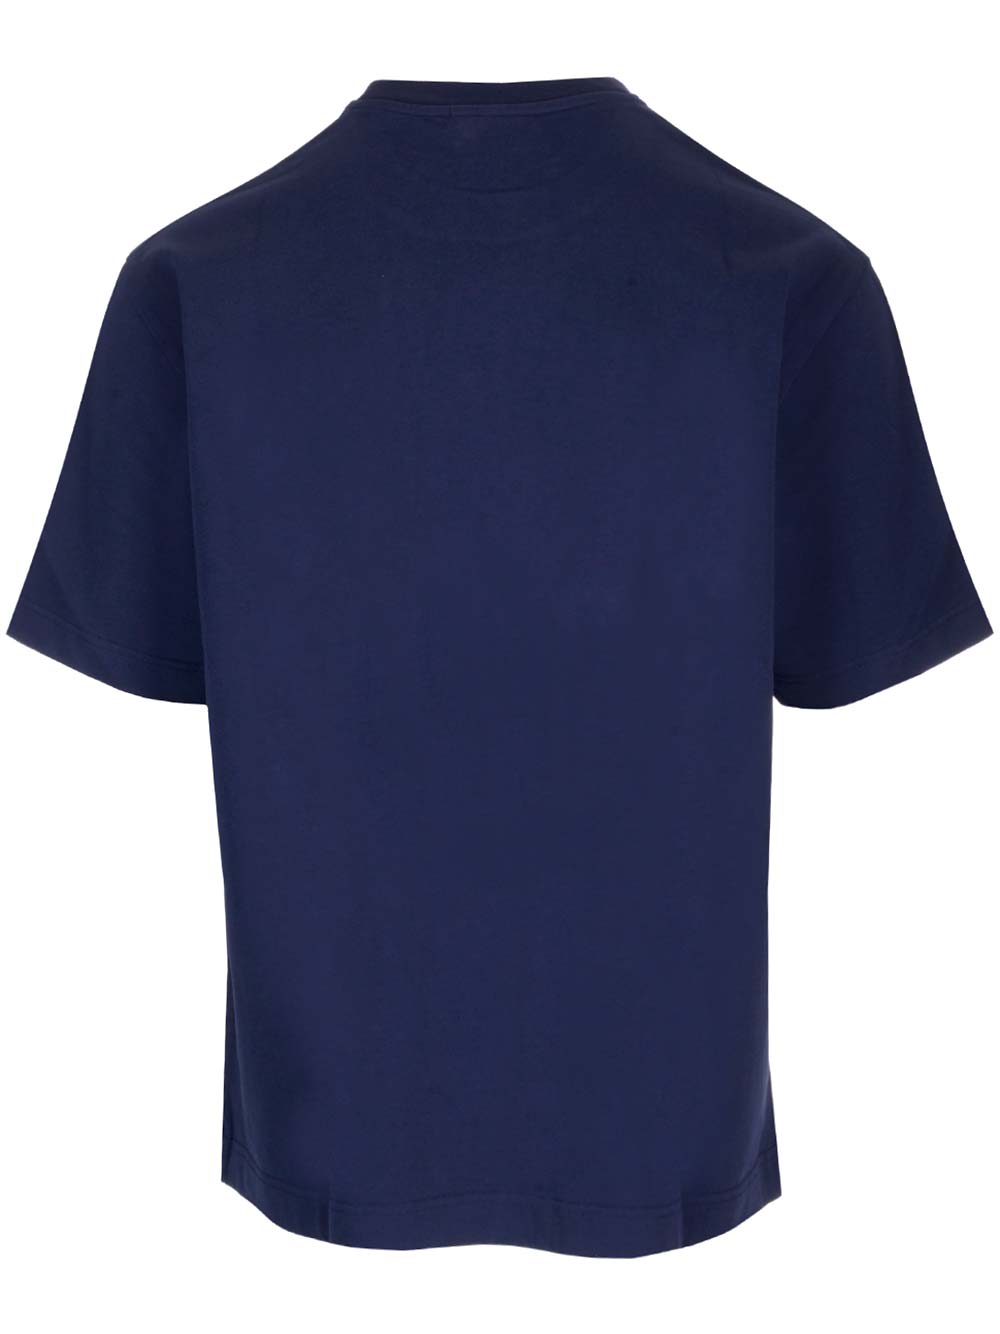 Shop Maison Kitsuné Blue Cotton T-shirt